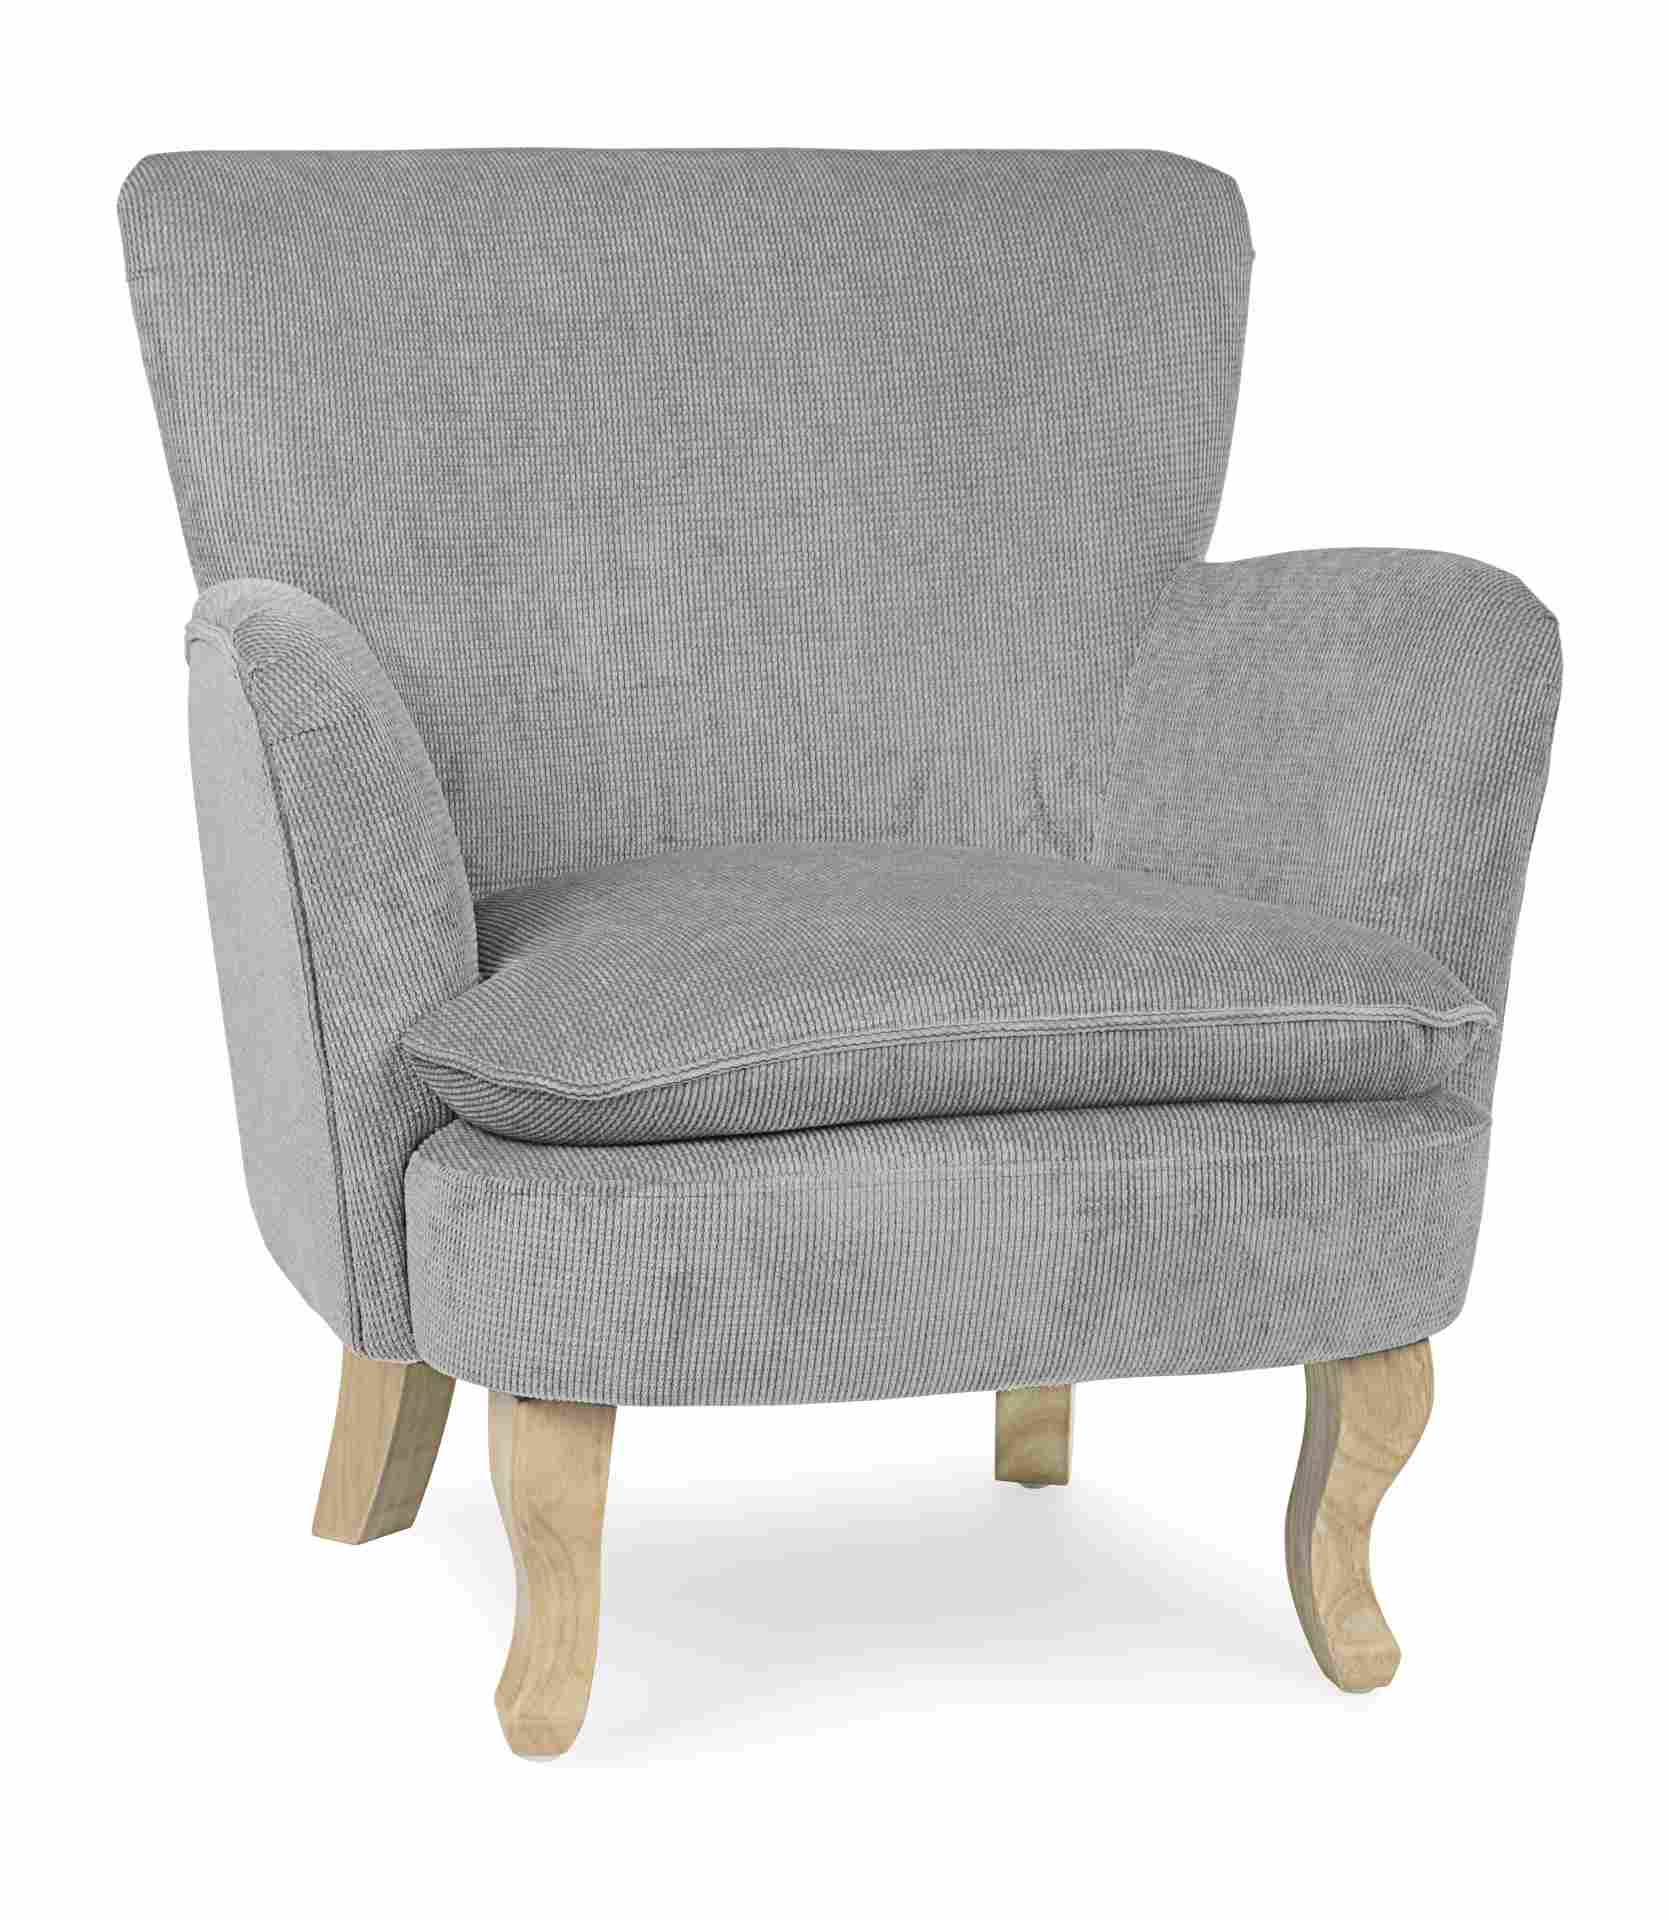 Der Sessel Chenille überzeugt mit seinem klassischen Design. Gefertigt wurde er aus Stoff in Cord-Optik, welcher einen hellgrauen Farbton besitzt. Das Gestell ist aus Kautschukholz und hat eine natürliche Farbe. Der Sessel besitzt eine Sitzhöhe von 45 cm.